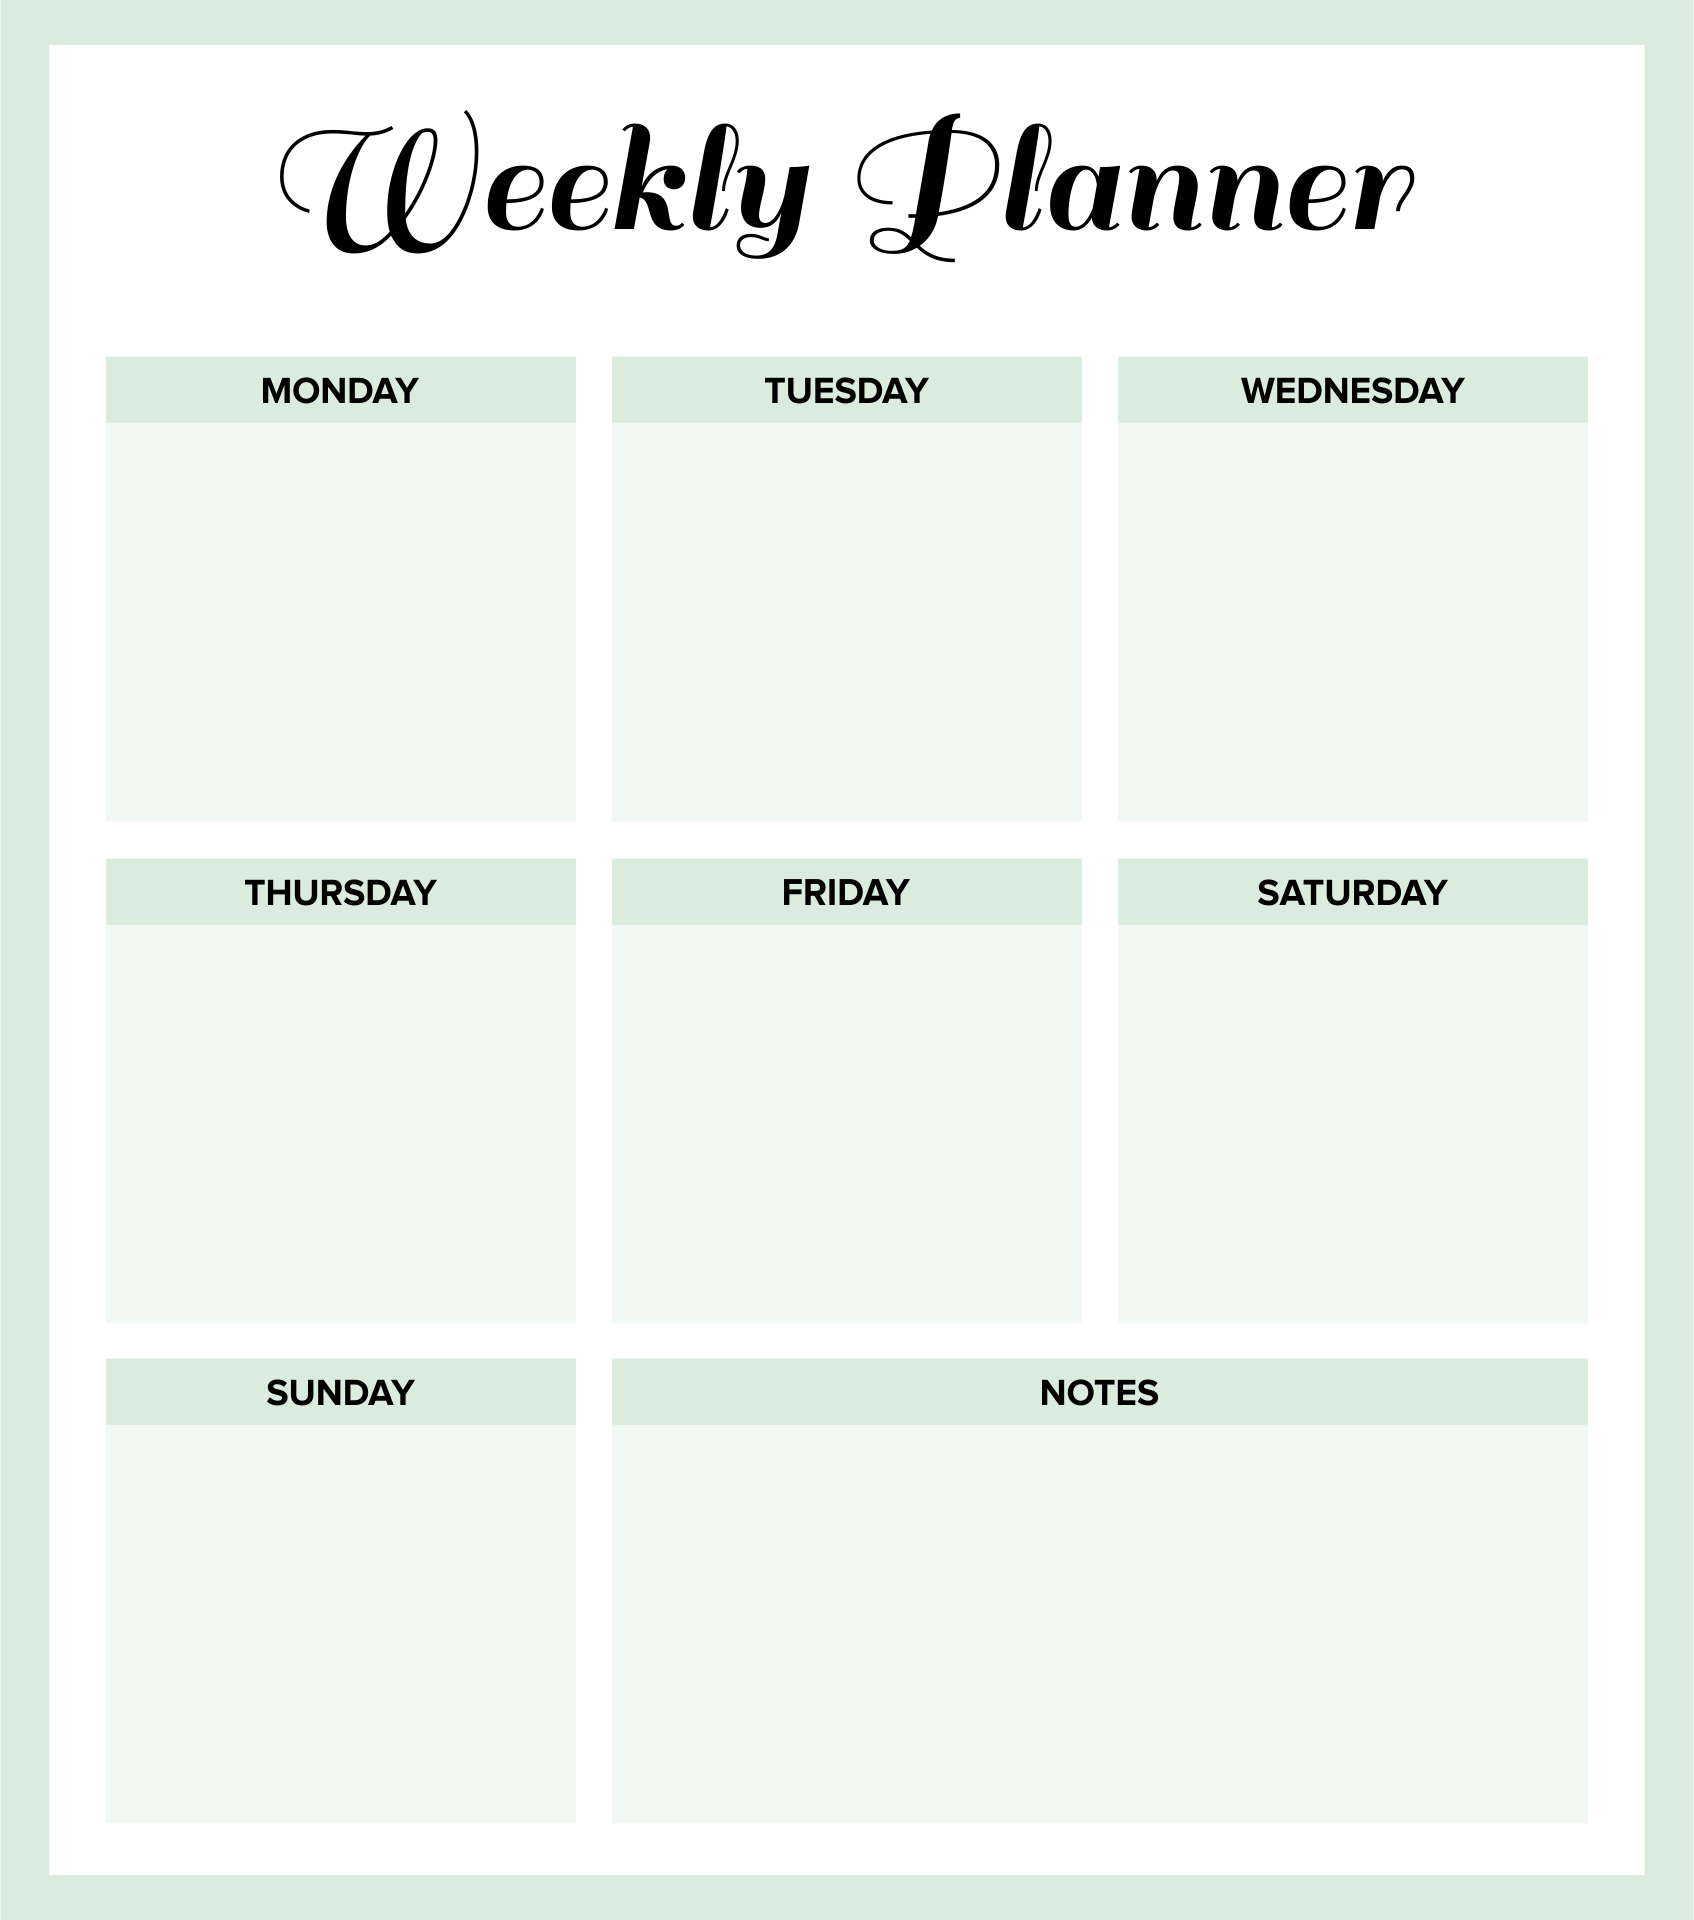 9-best-images-of-weekly-planner-printable-pdf-weekly-planner-template-pdf-free-printable